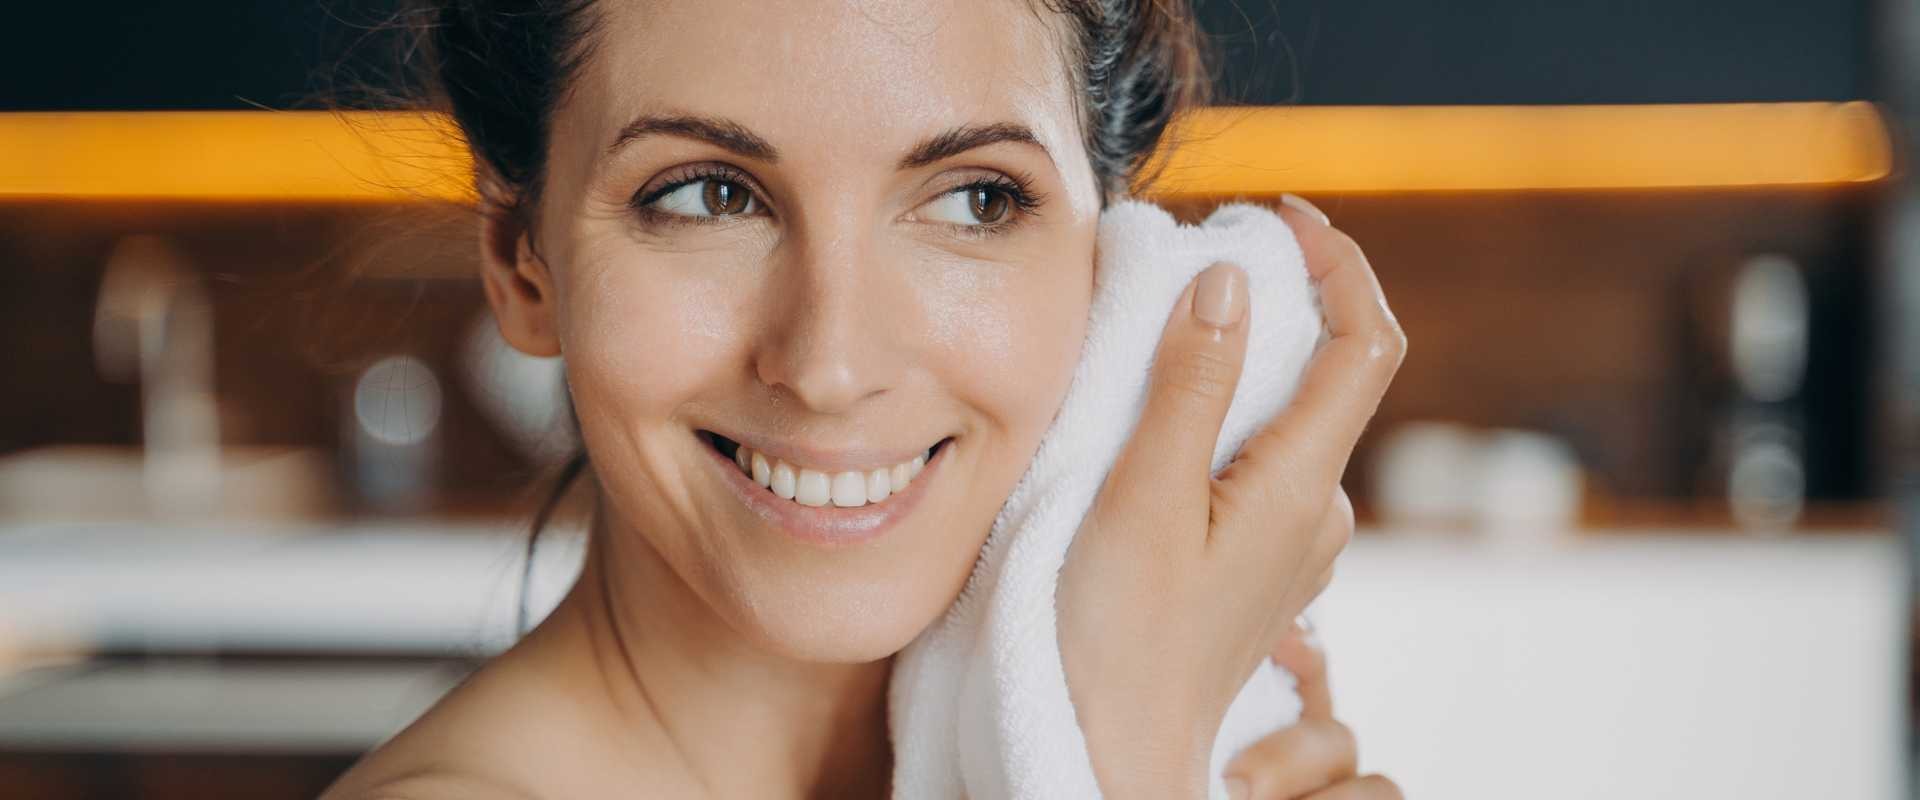 Trucos y productos para una limpieza facial perfecta con Gisèle Denis